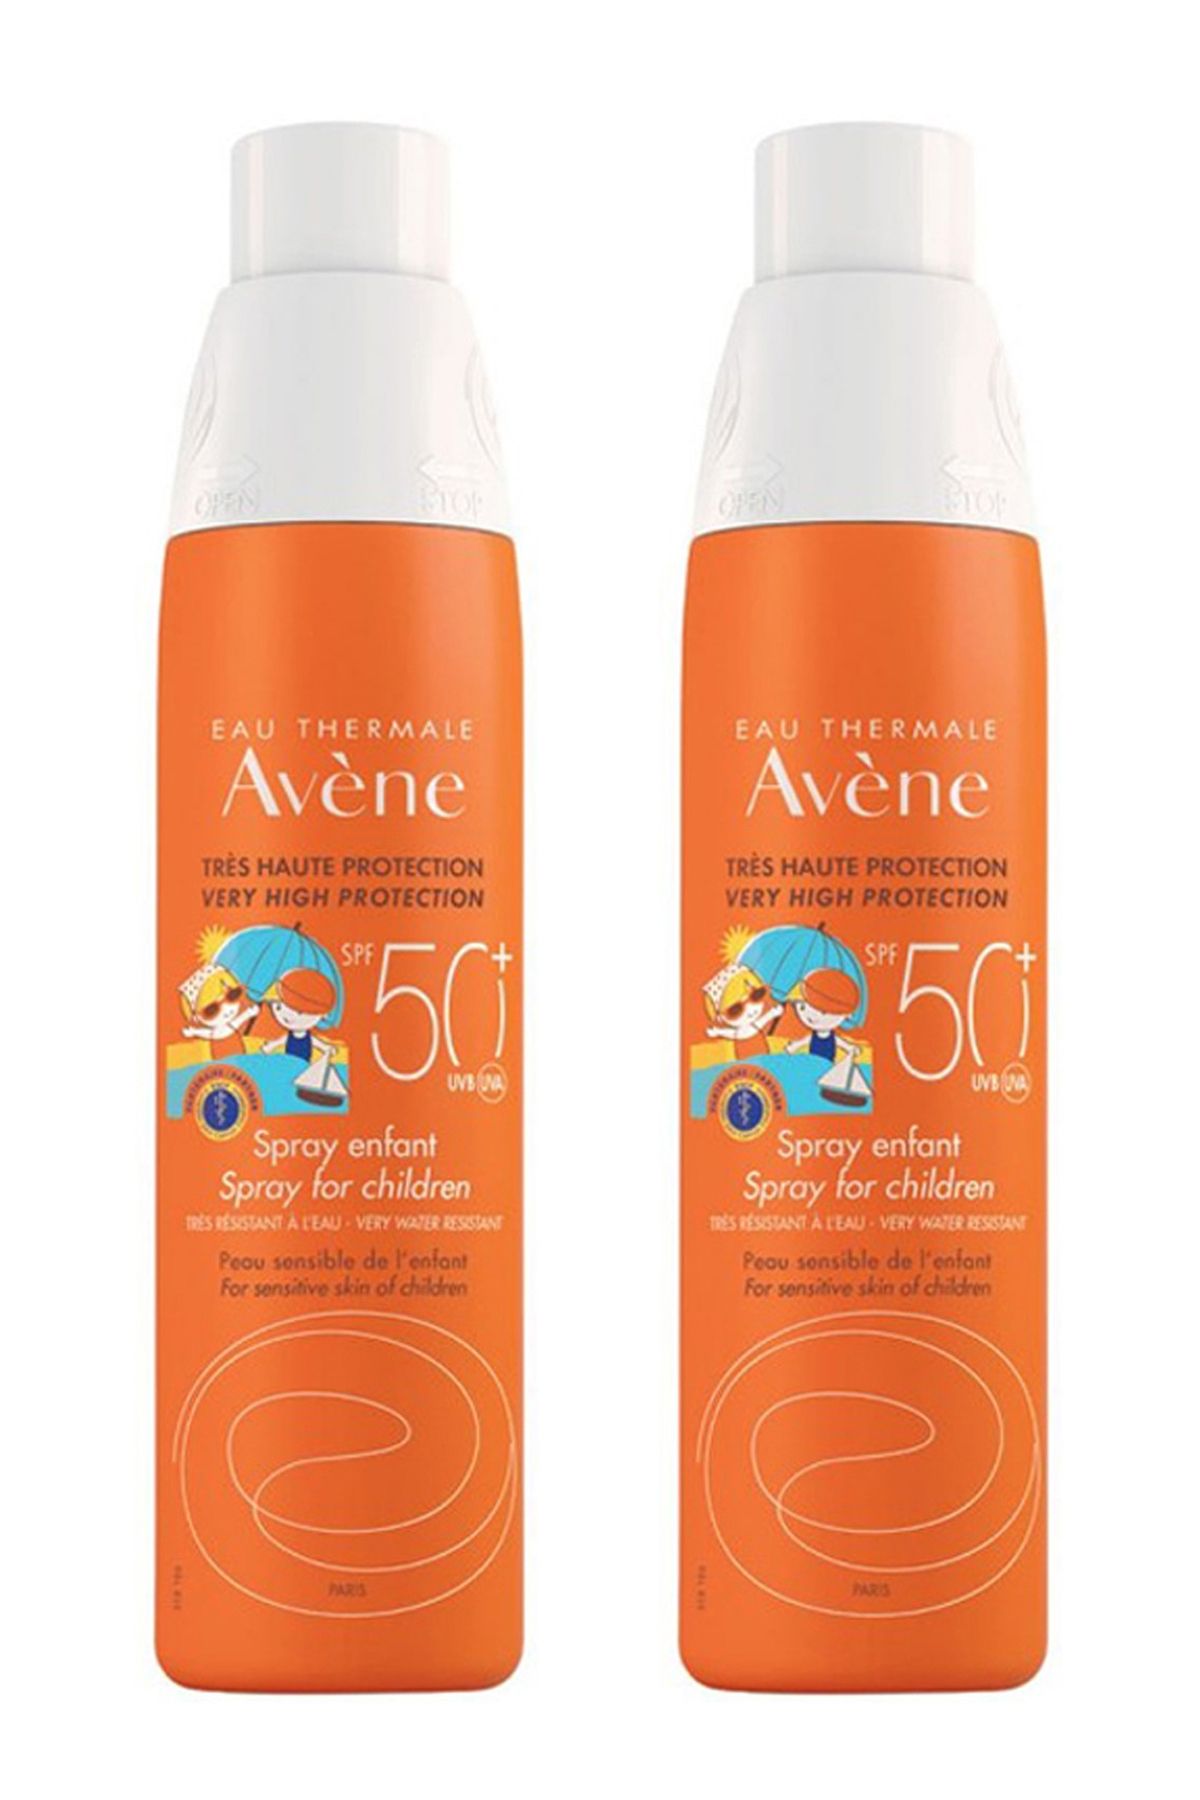 Avene Spf 50+ Spray Enfant 200 ml Çocuklar İçin Güneşten Korunma 2'li